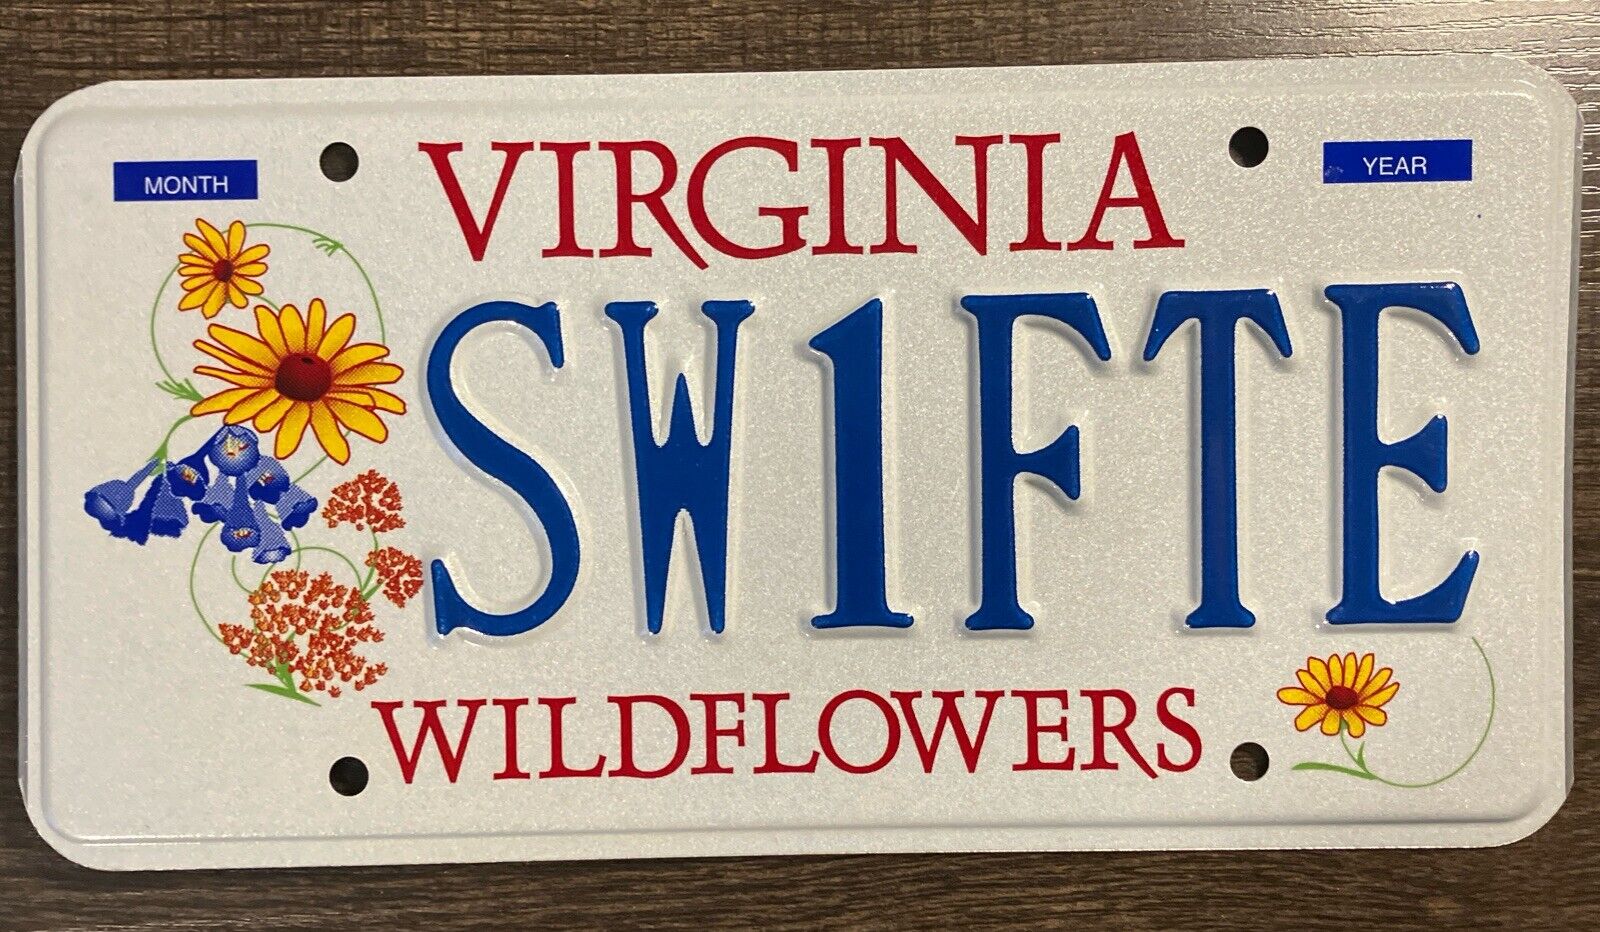 Virginia Personalized Vanity License Plate Taylor Swift SW1FTE Wildflower Fan